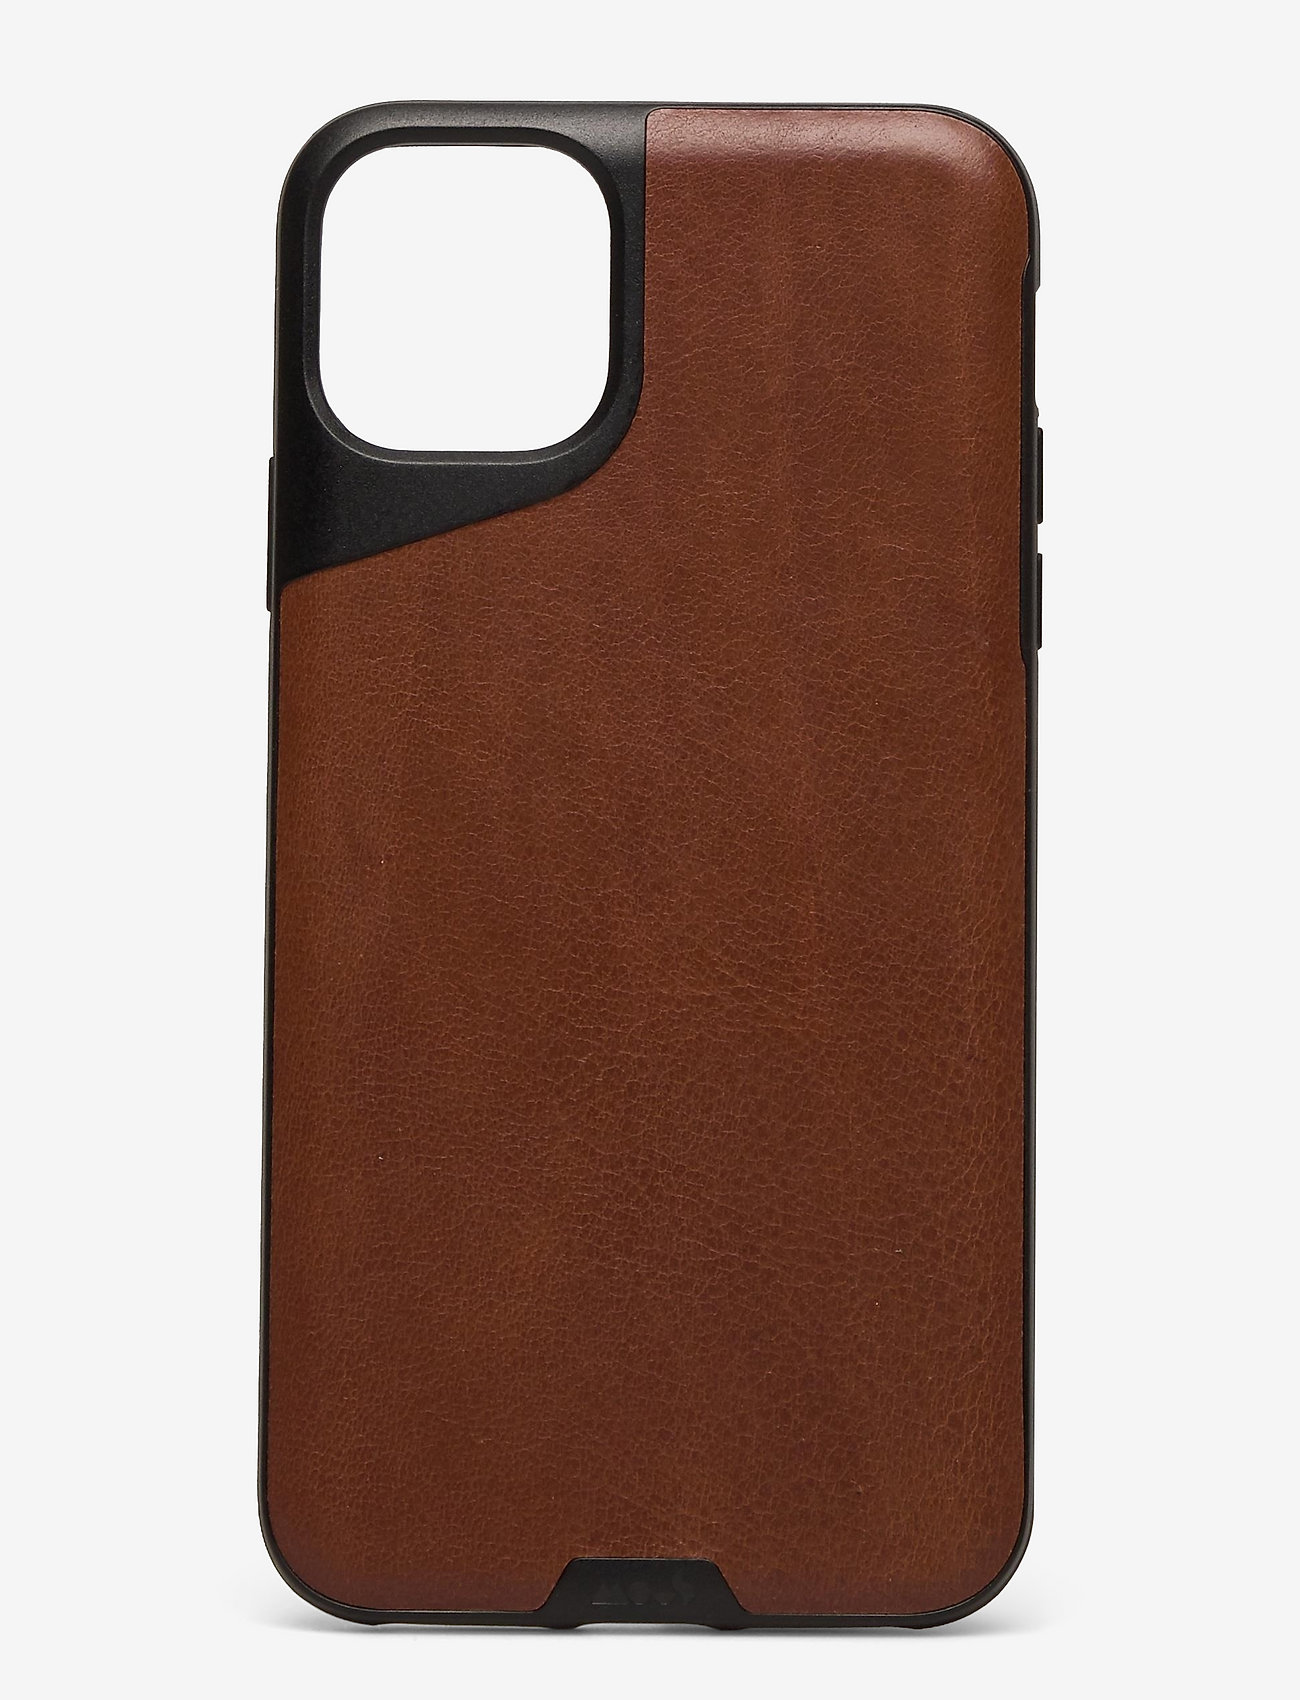 aankomst hanger ochtendgloren Mous Mous Contour Leather Protective Phone Case - Mobiele telefoon hoesjes  | Boozt.com